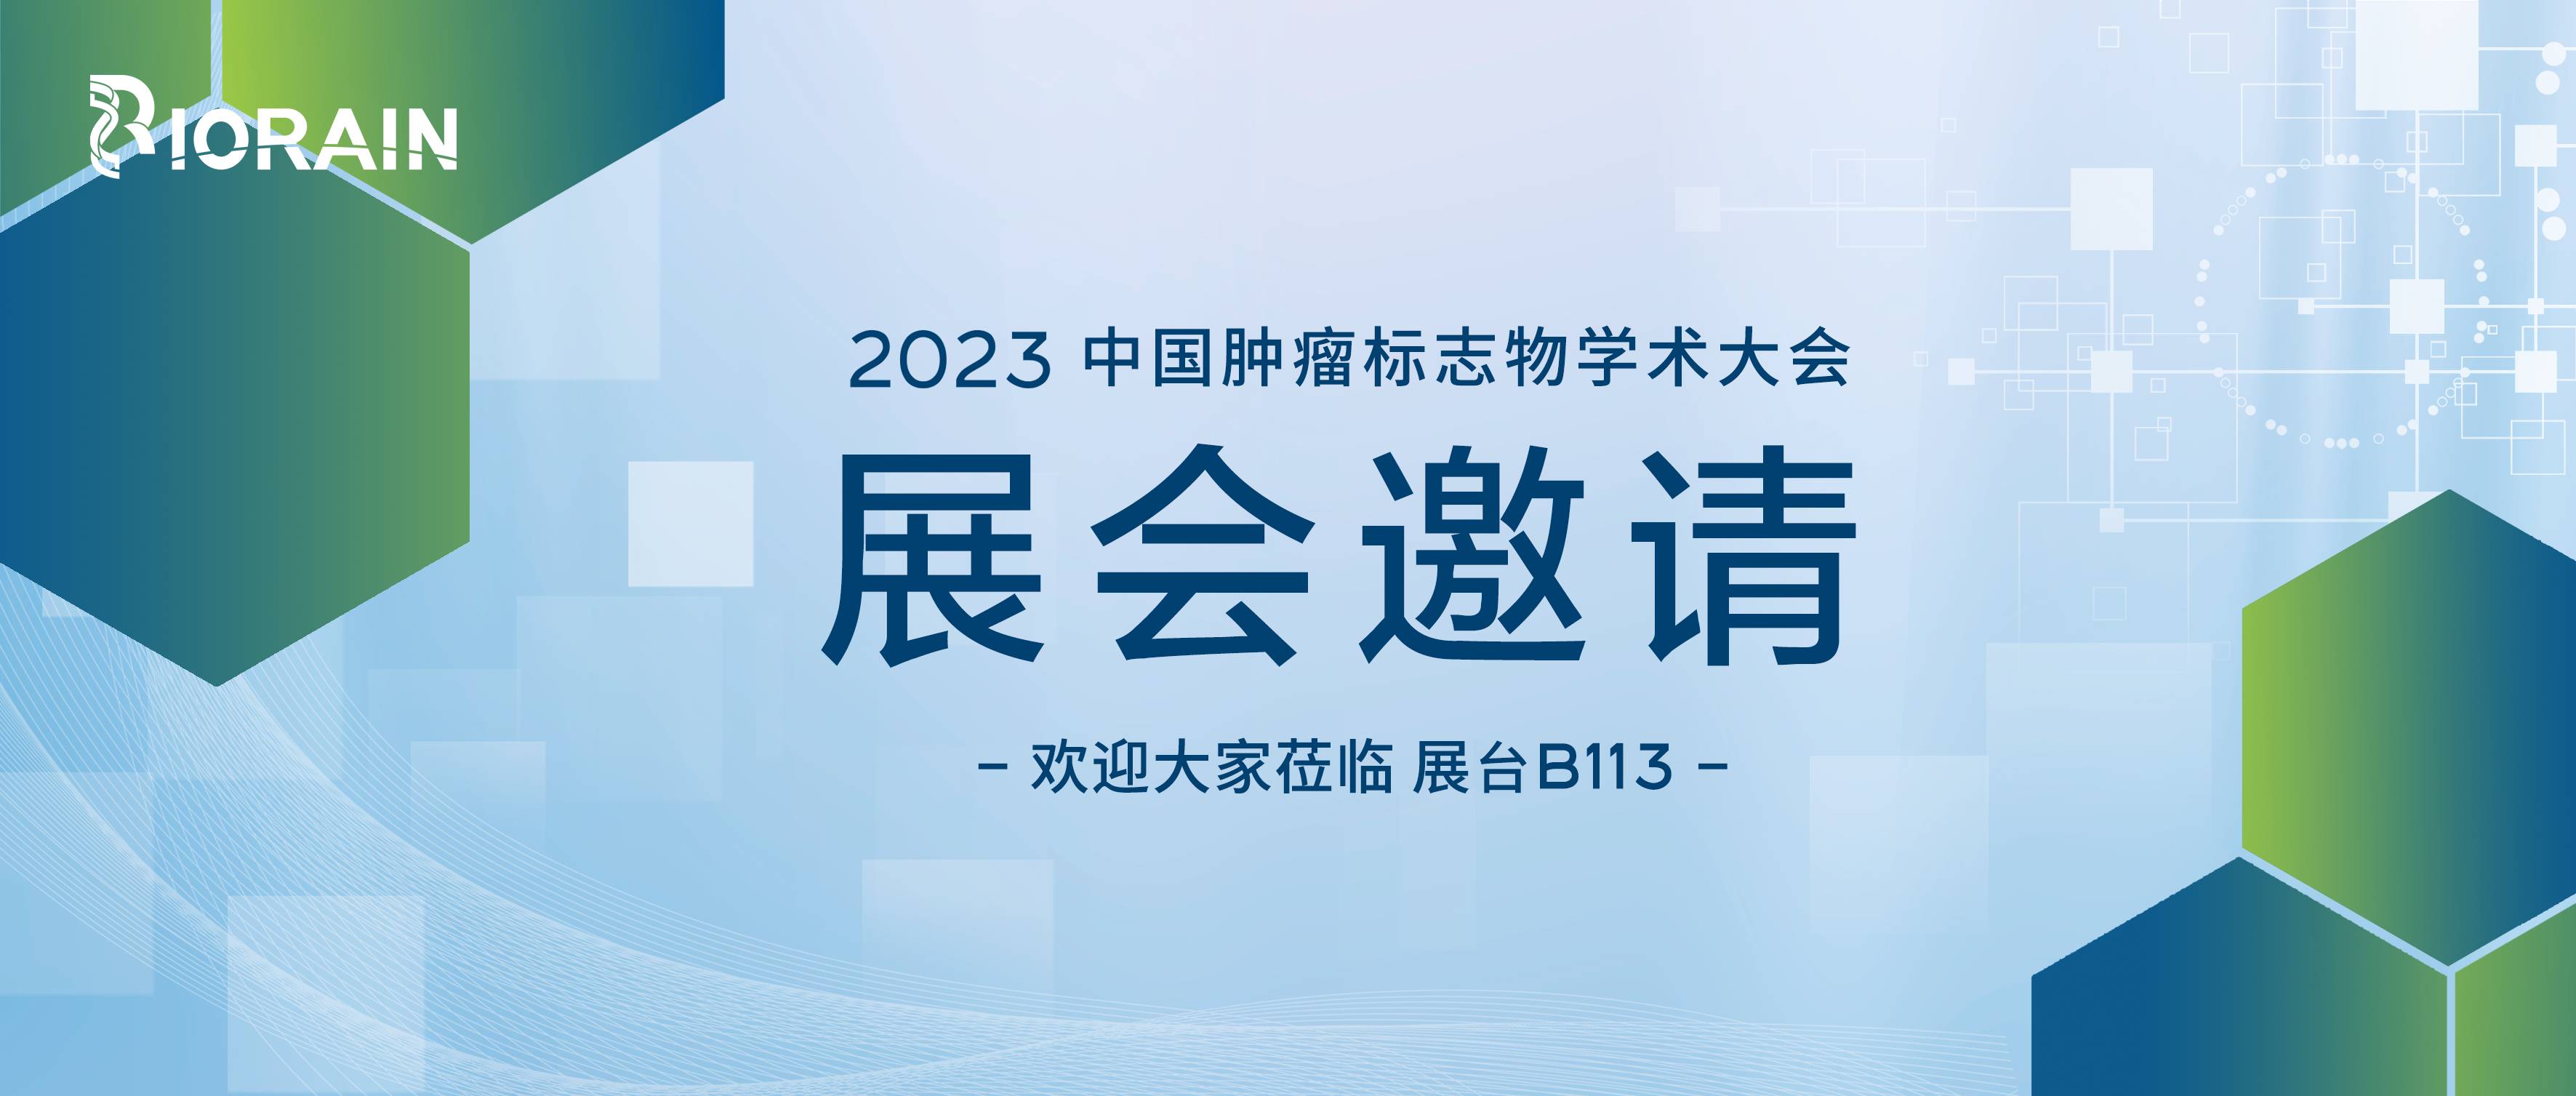 邀请函 | 博瑞生物与您相约2023CCTB中国肿瘤标志物学术大会